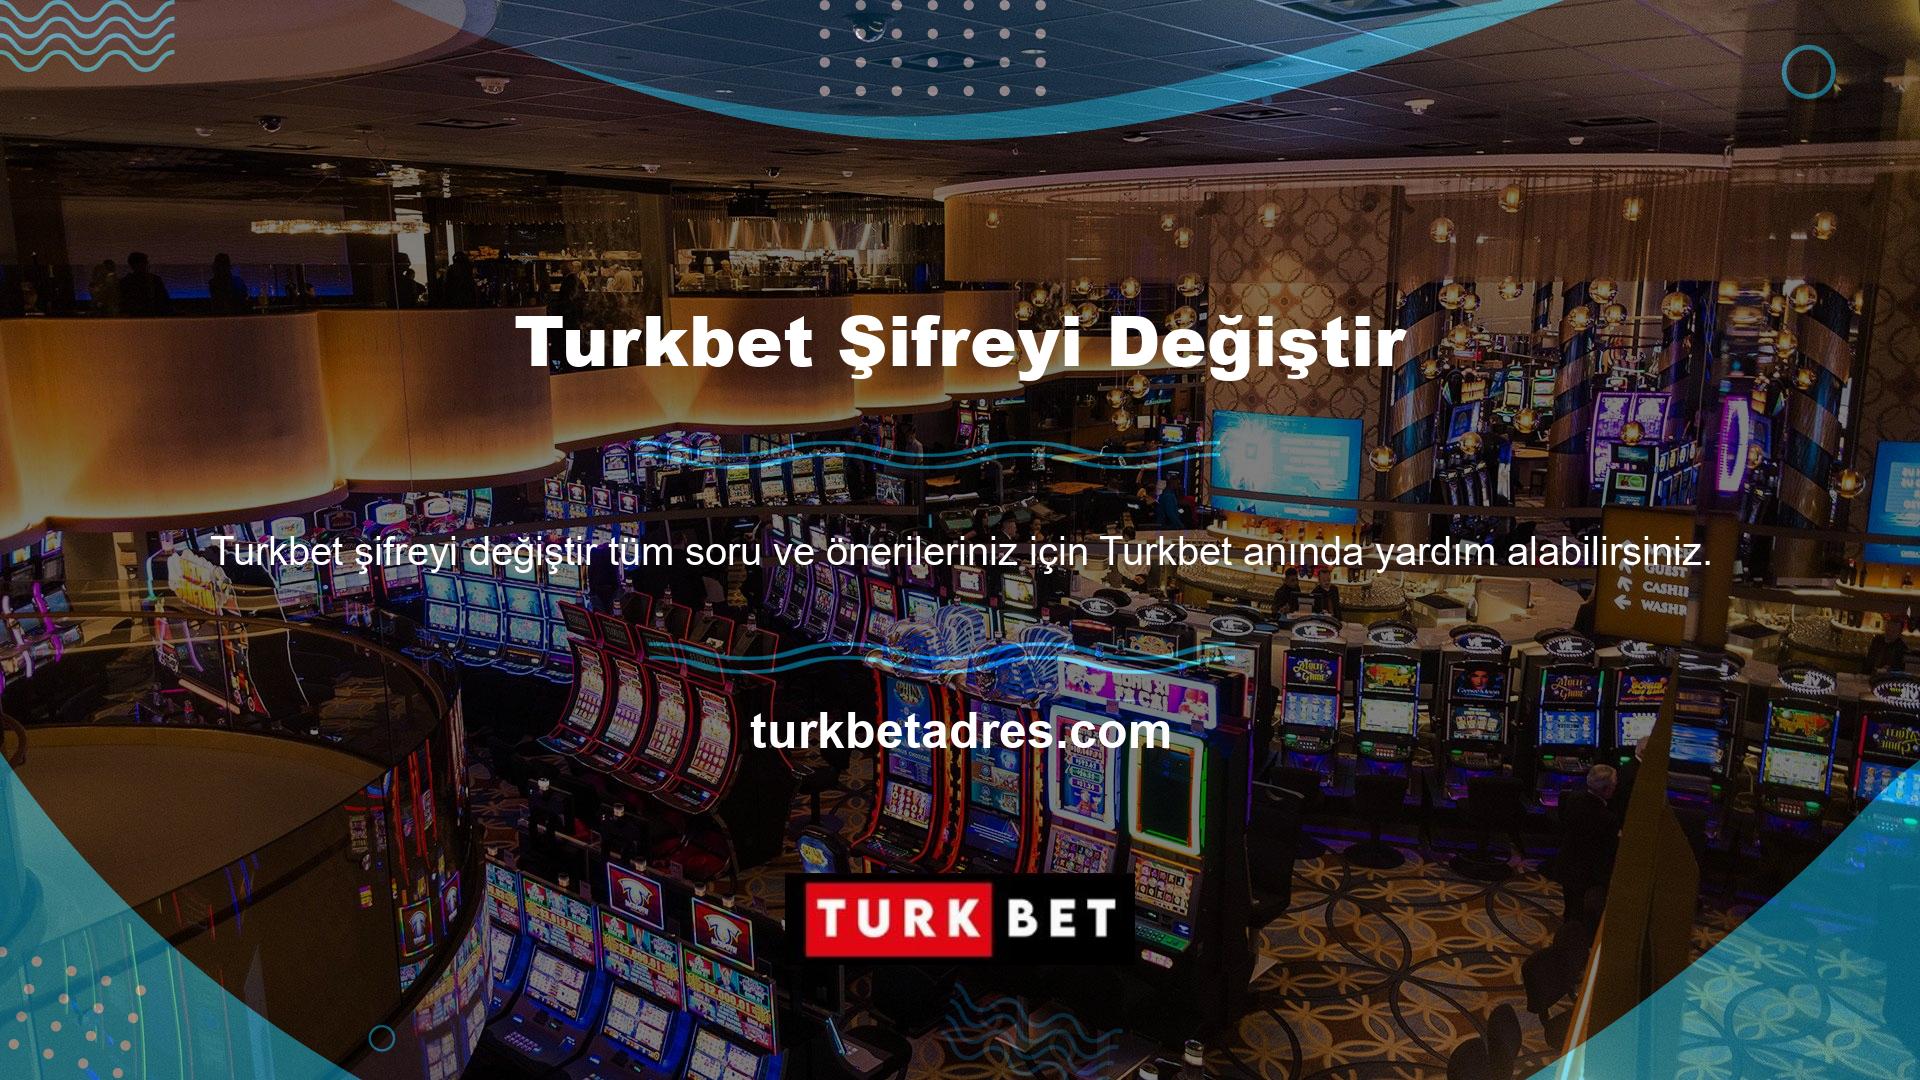 Turkbet oyun sektörüne ayrı bir hava katıyor